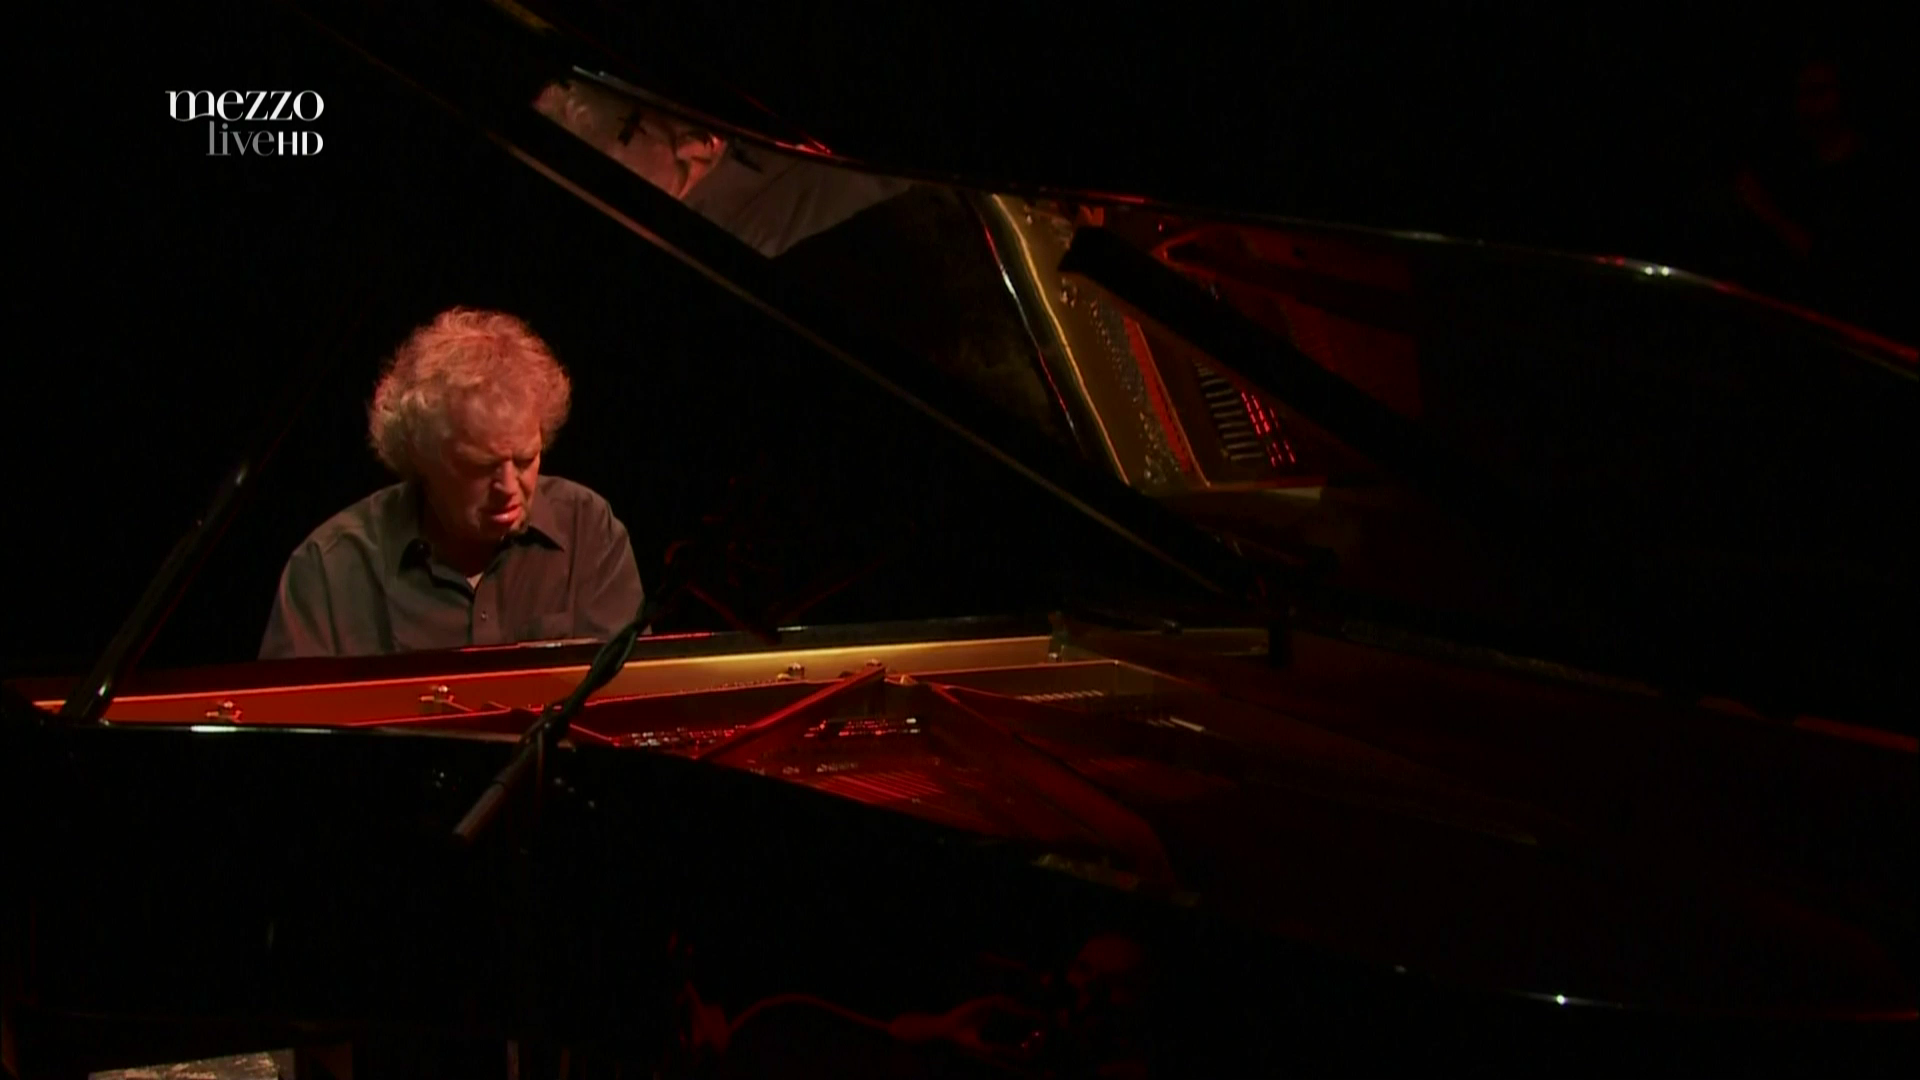 2010 Joachim Kuhn Solo - Live at Jazzdor Festival [HDTV 1080p] 9